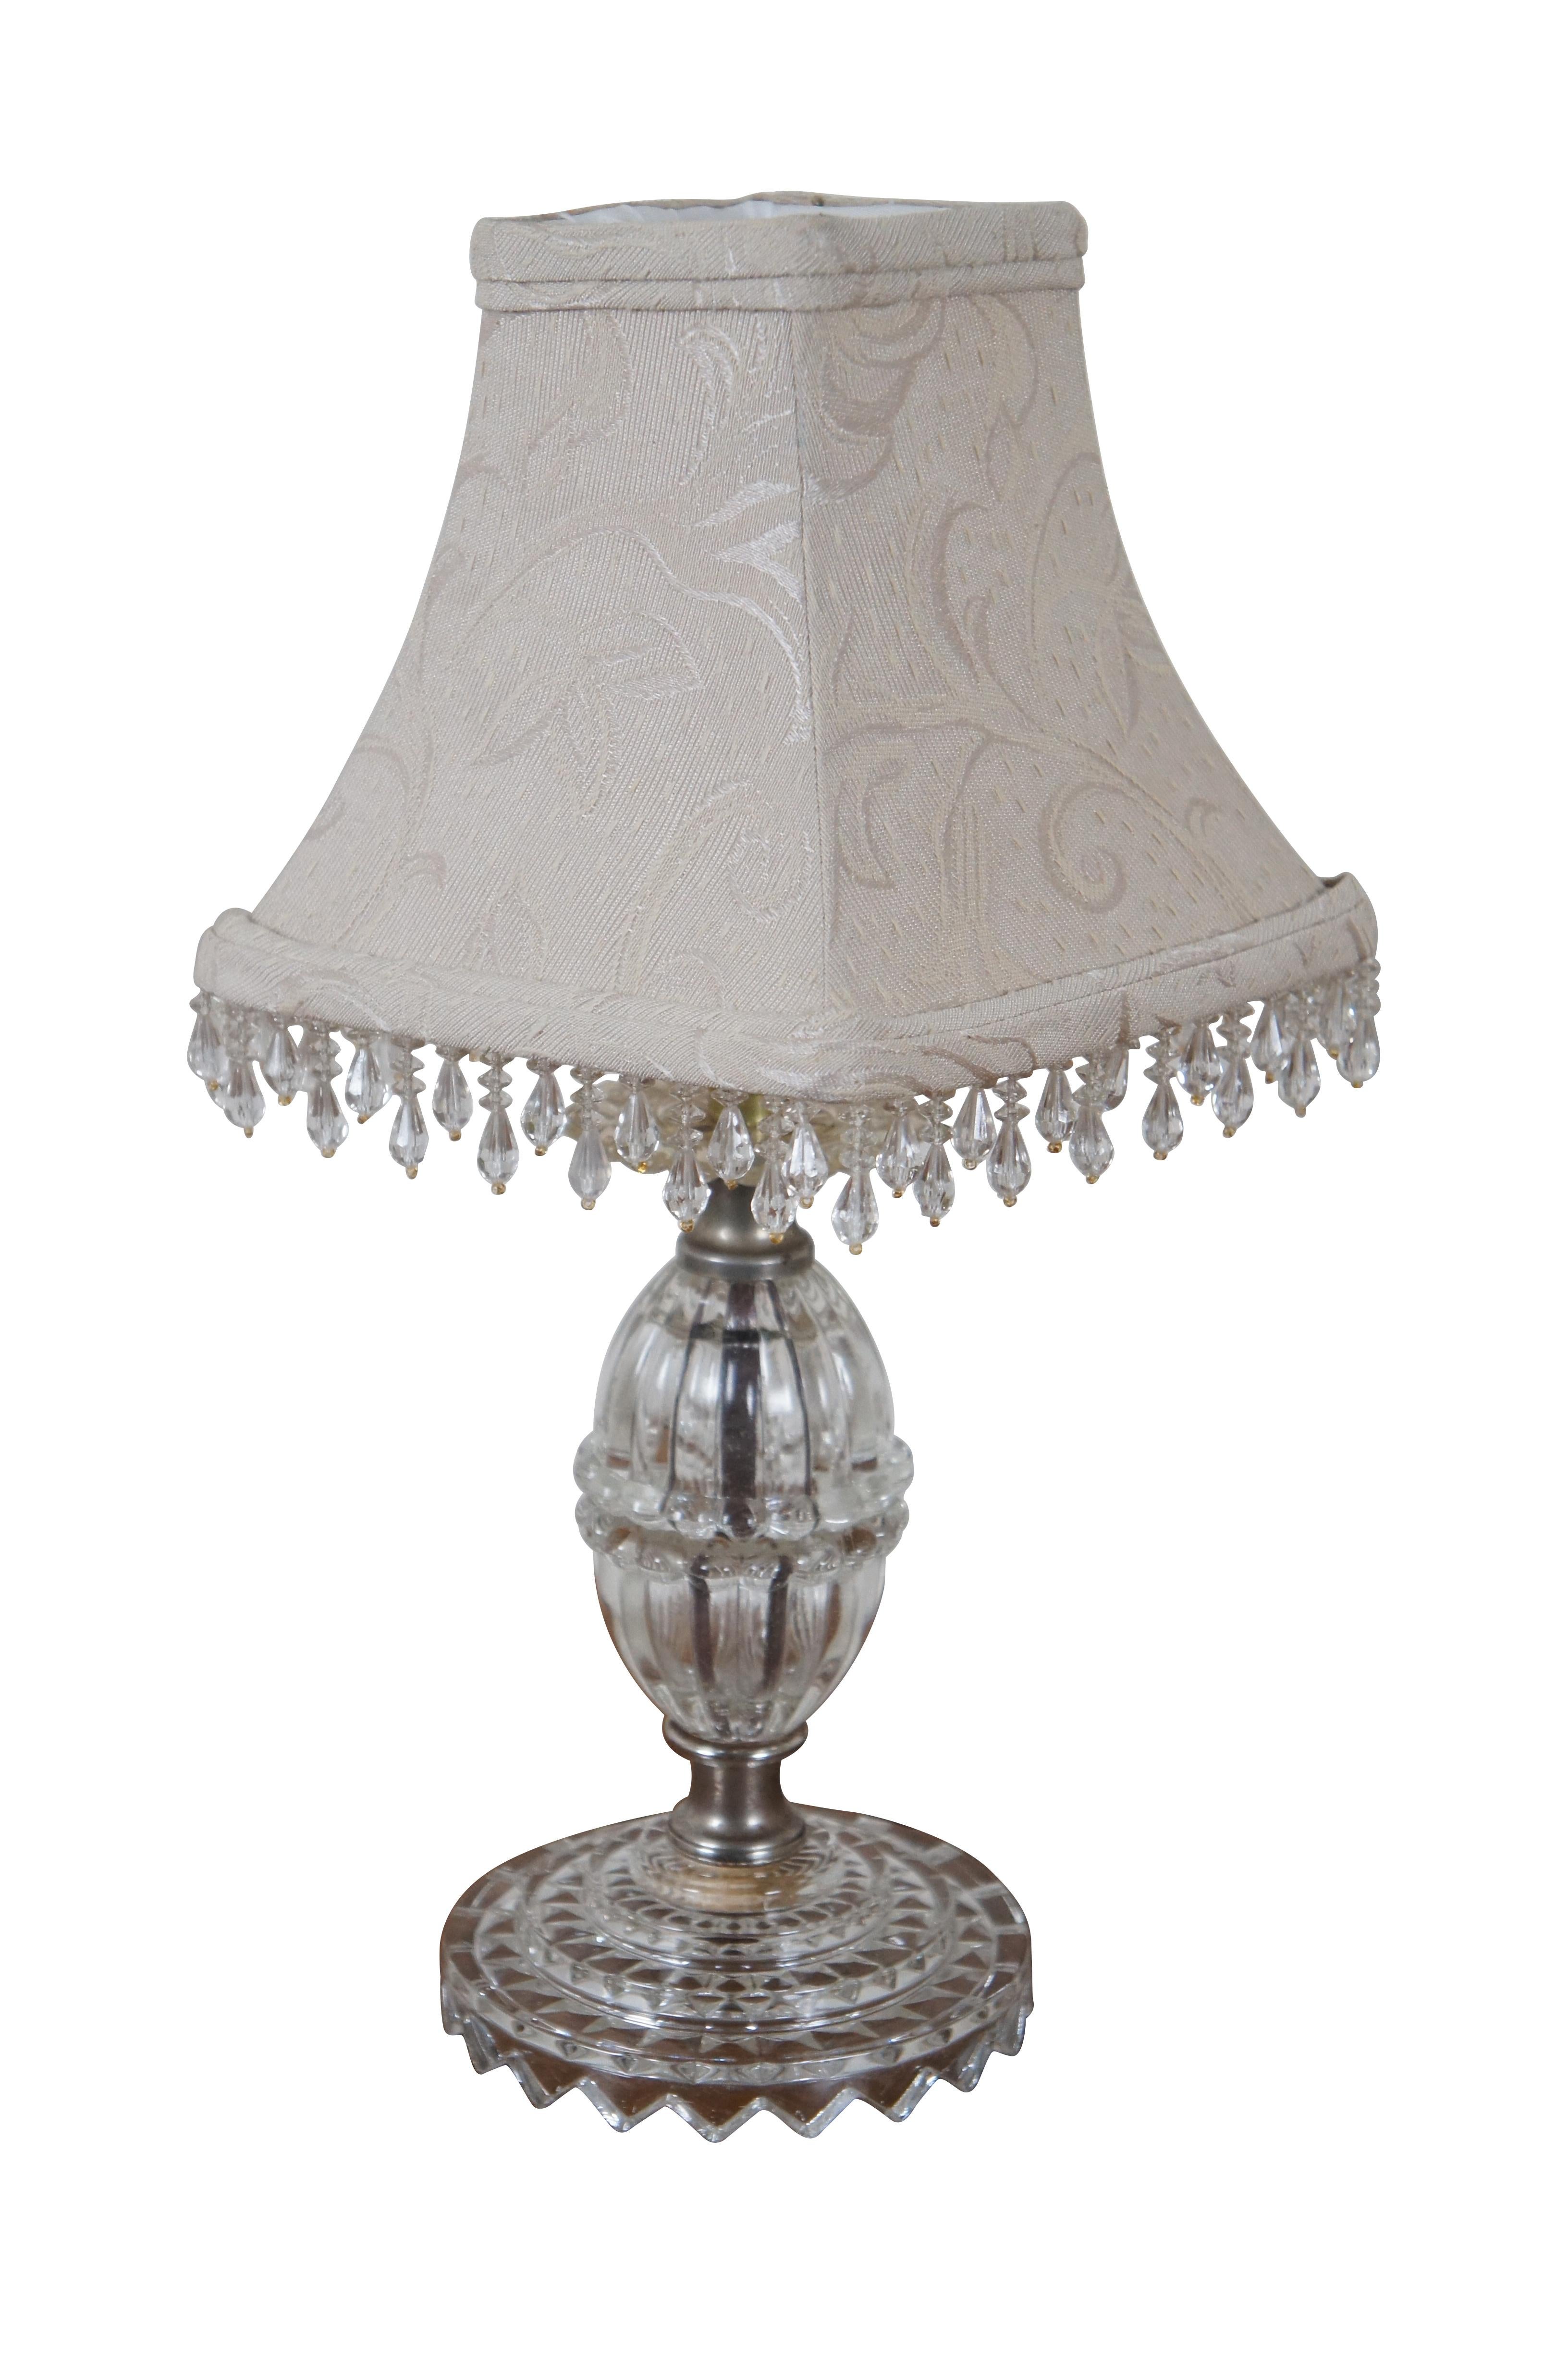 Paire de petites lampes de table en verre pressé de style Hollywood Regency, vers le milieu du 20e siècle, comprenant des bases rondes en dents de scie, un corps cannelé en forme d'amande avec un bord bulle autour du milieu et surmonté d'un bord